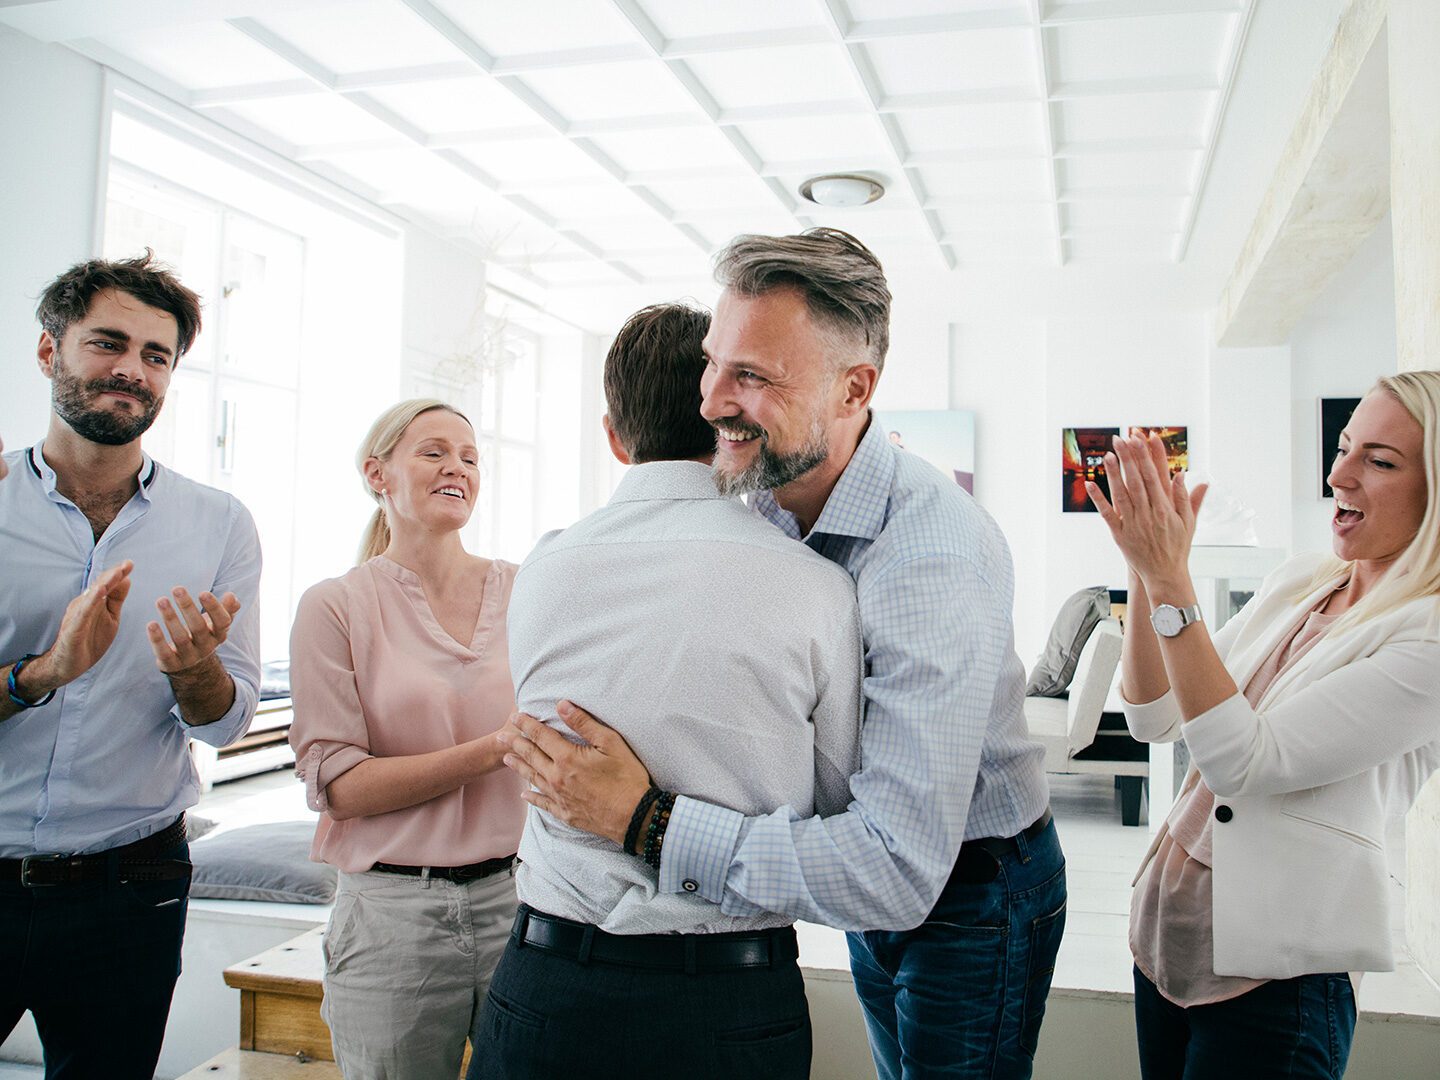 Bürosituation, in der sich zwei Männer fröhlich umarmen und die Kolleginnen drumherum applaudieren.